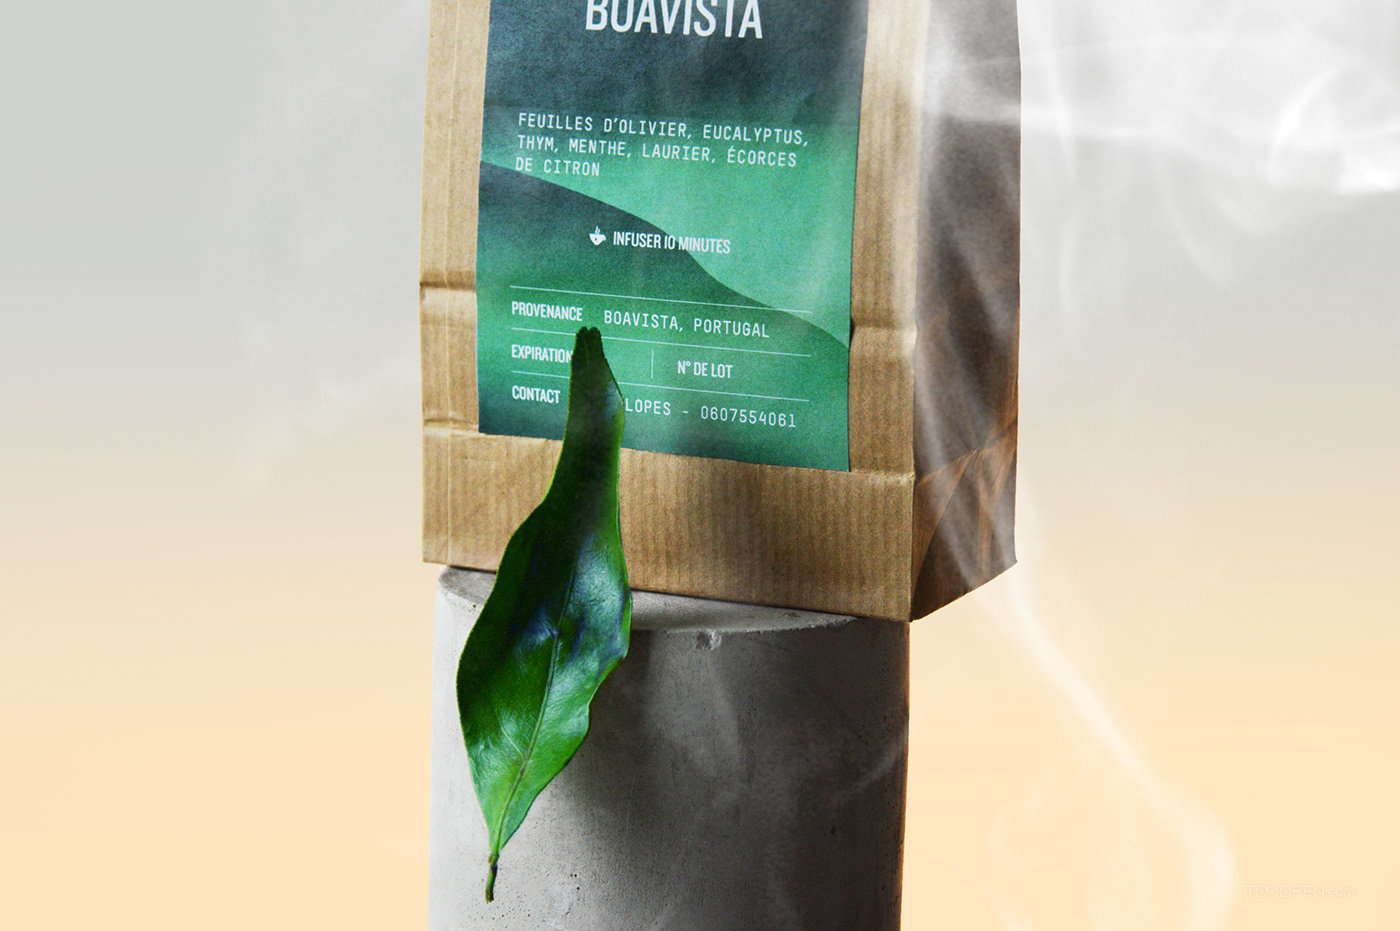 Tisanes de Boavista欧式茶叶包装作品欣赏-17